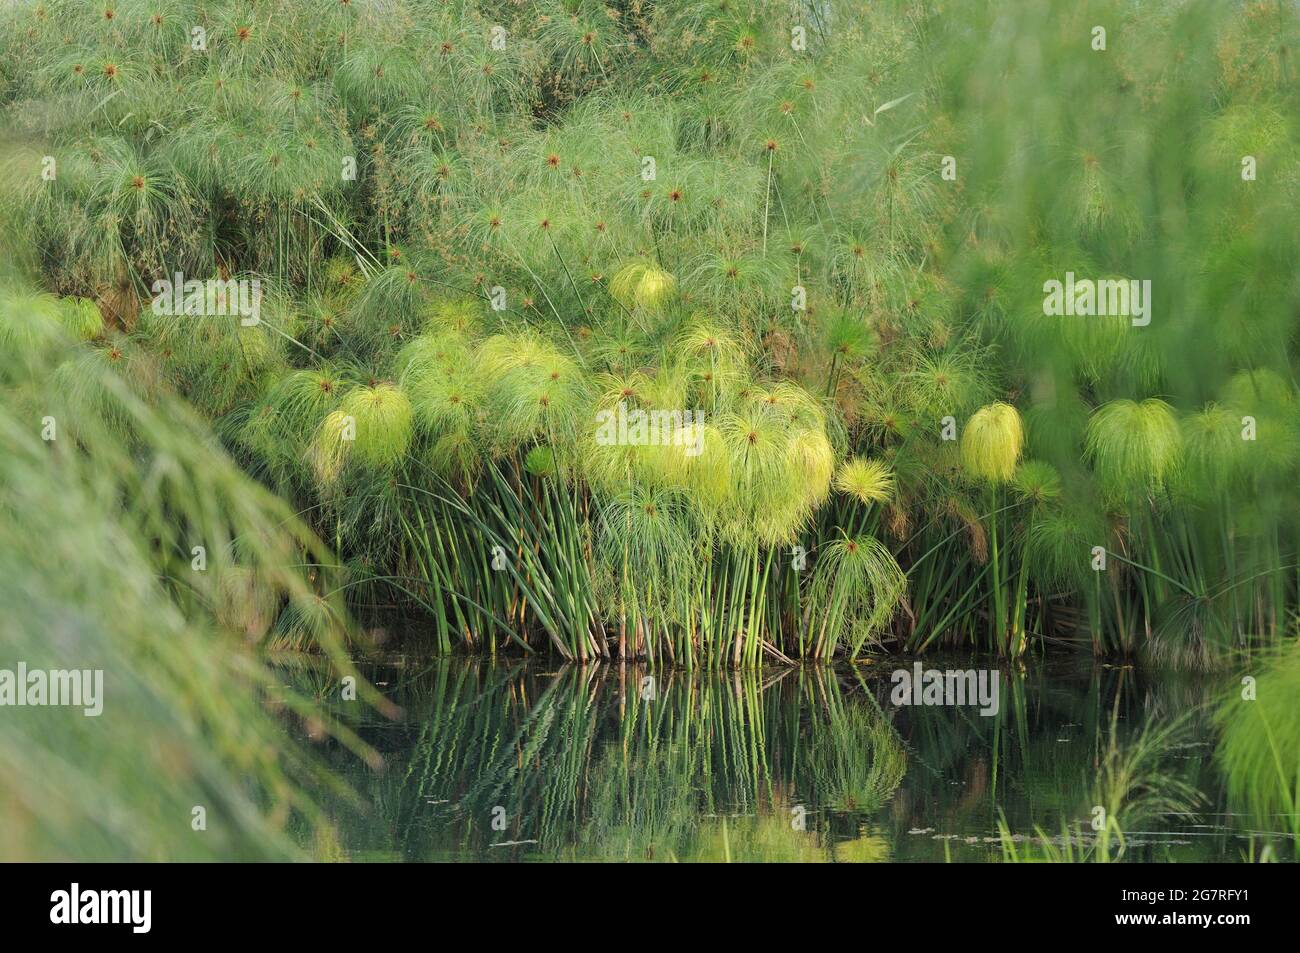 Carex de papyrus (Cyperus papyrus), fonte Ciane, province de Syracuse, Sicile, Italie Banque D'Images